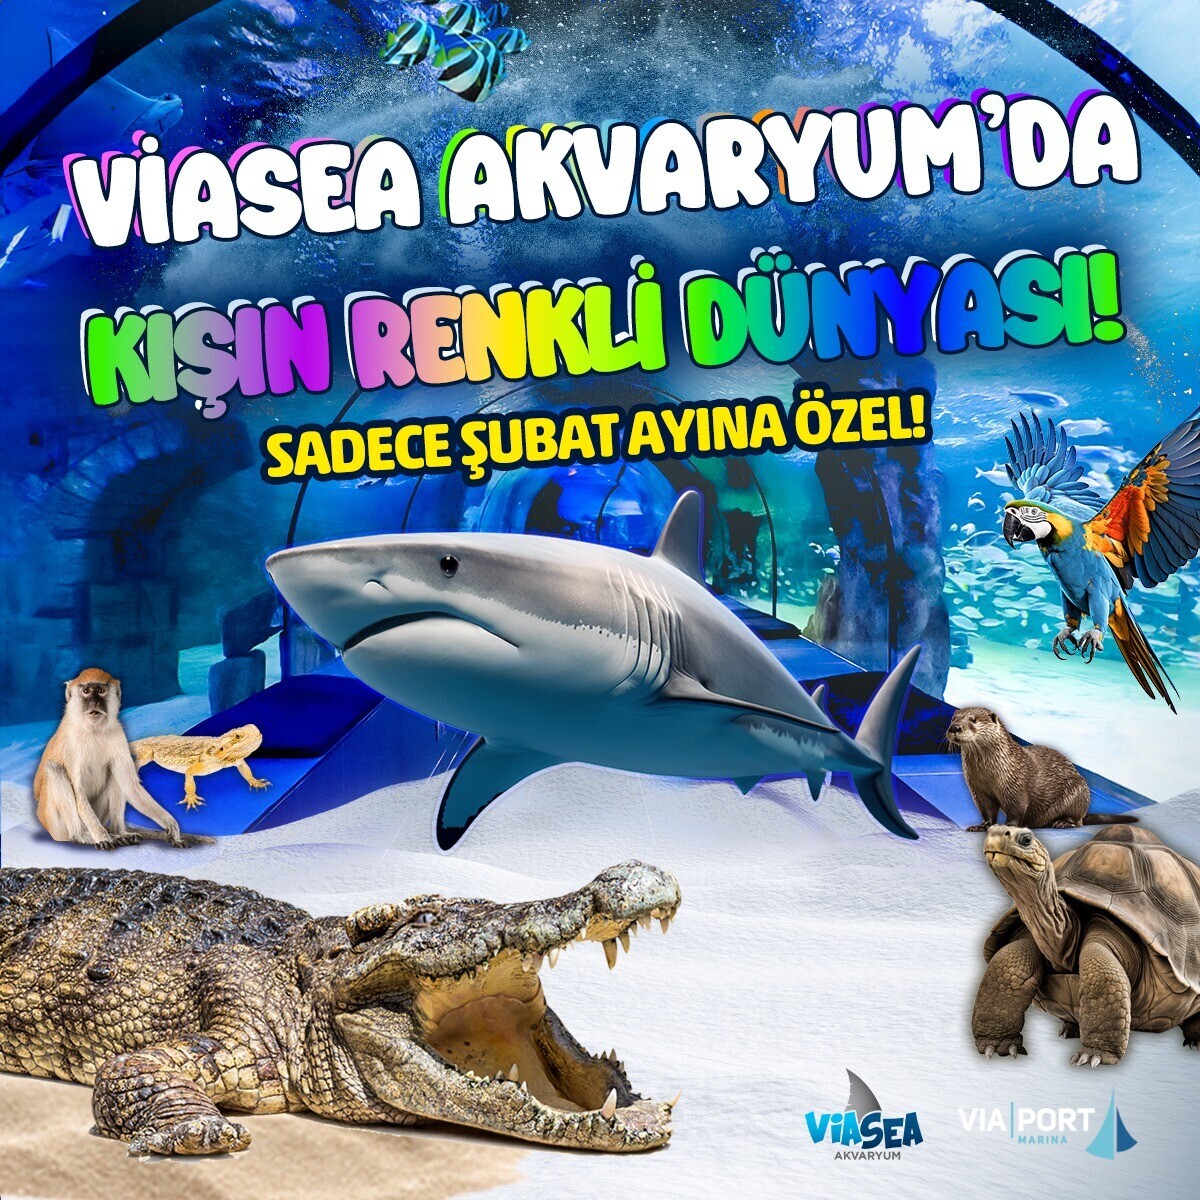 Viasea Akvaryum Giriş Bileti